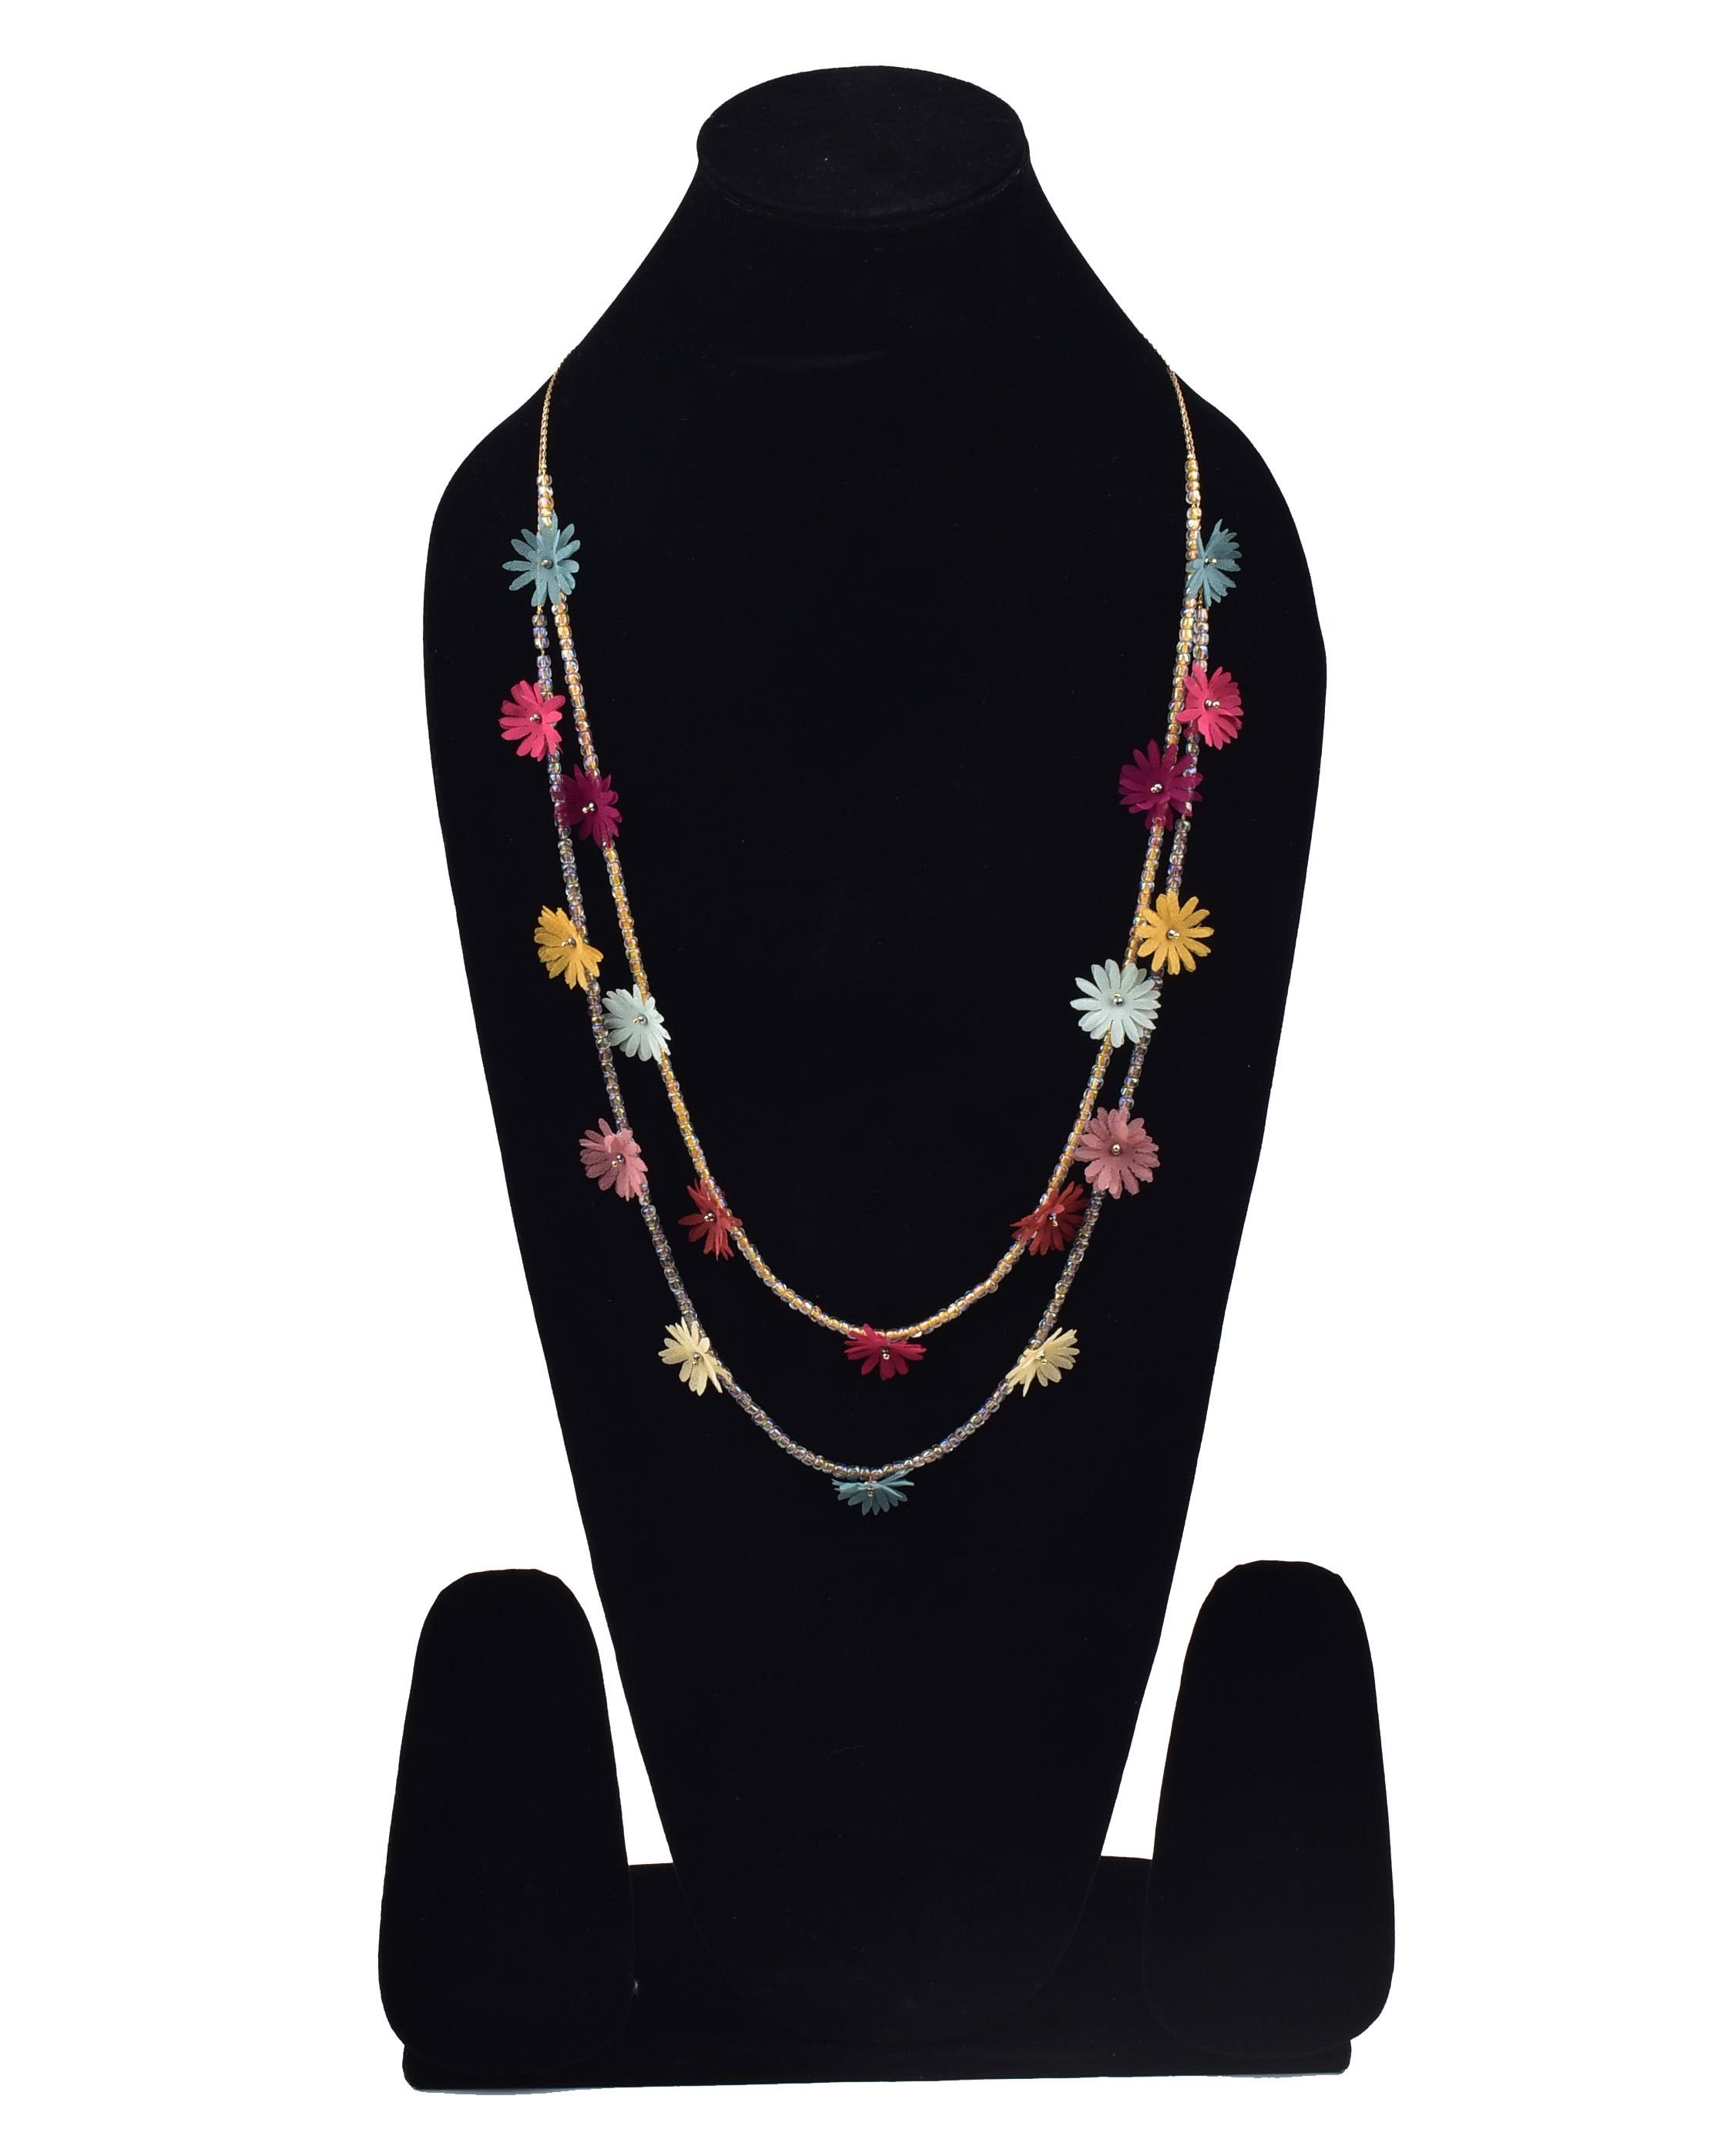 Calendula Glass Beads Necklace